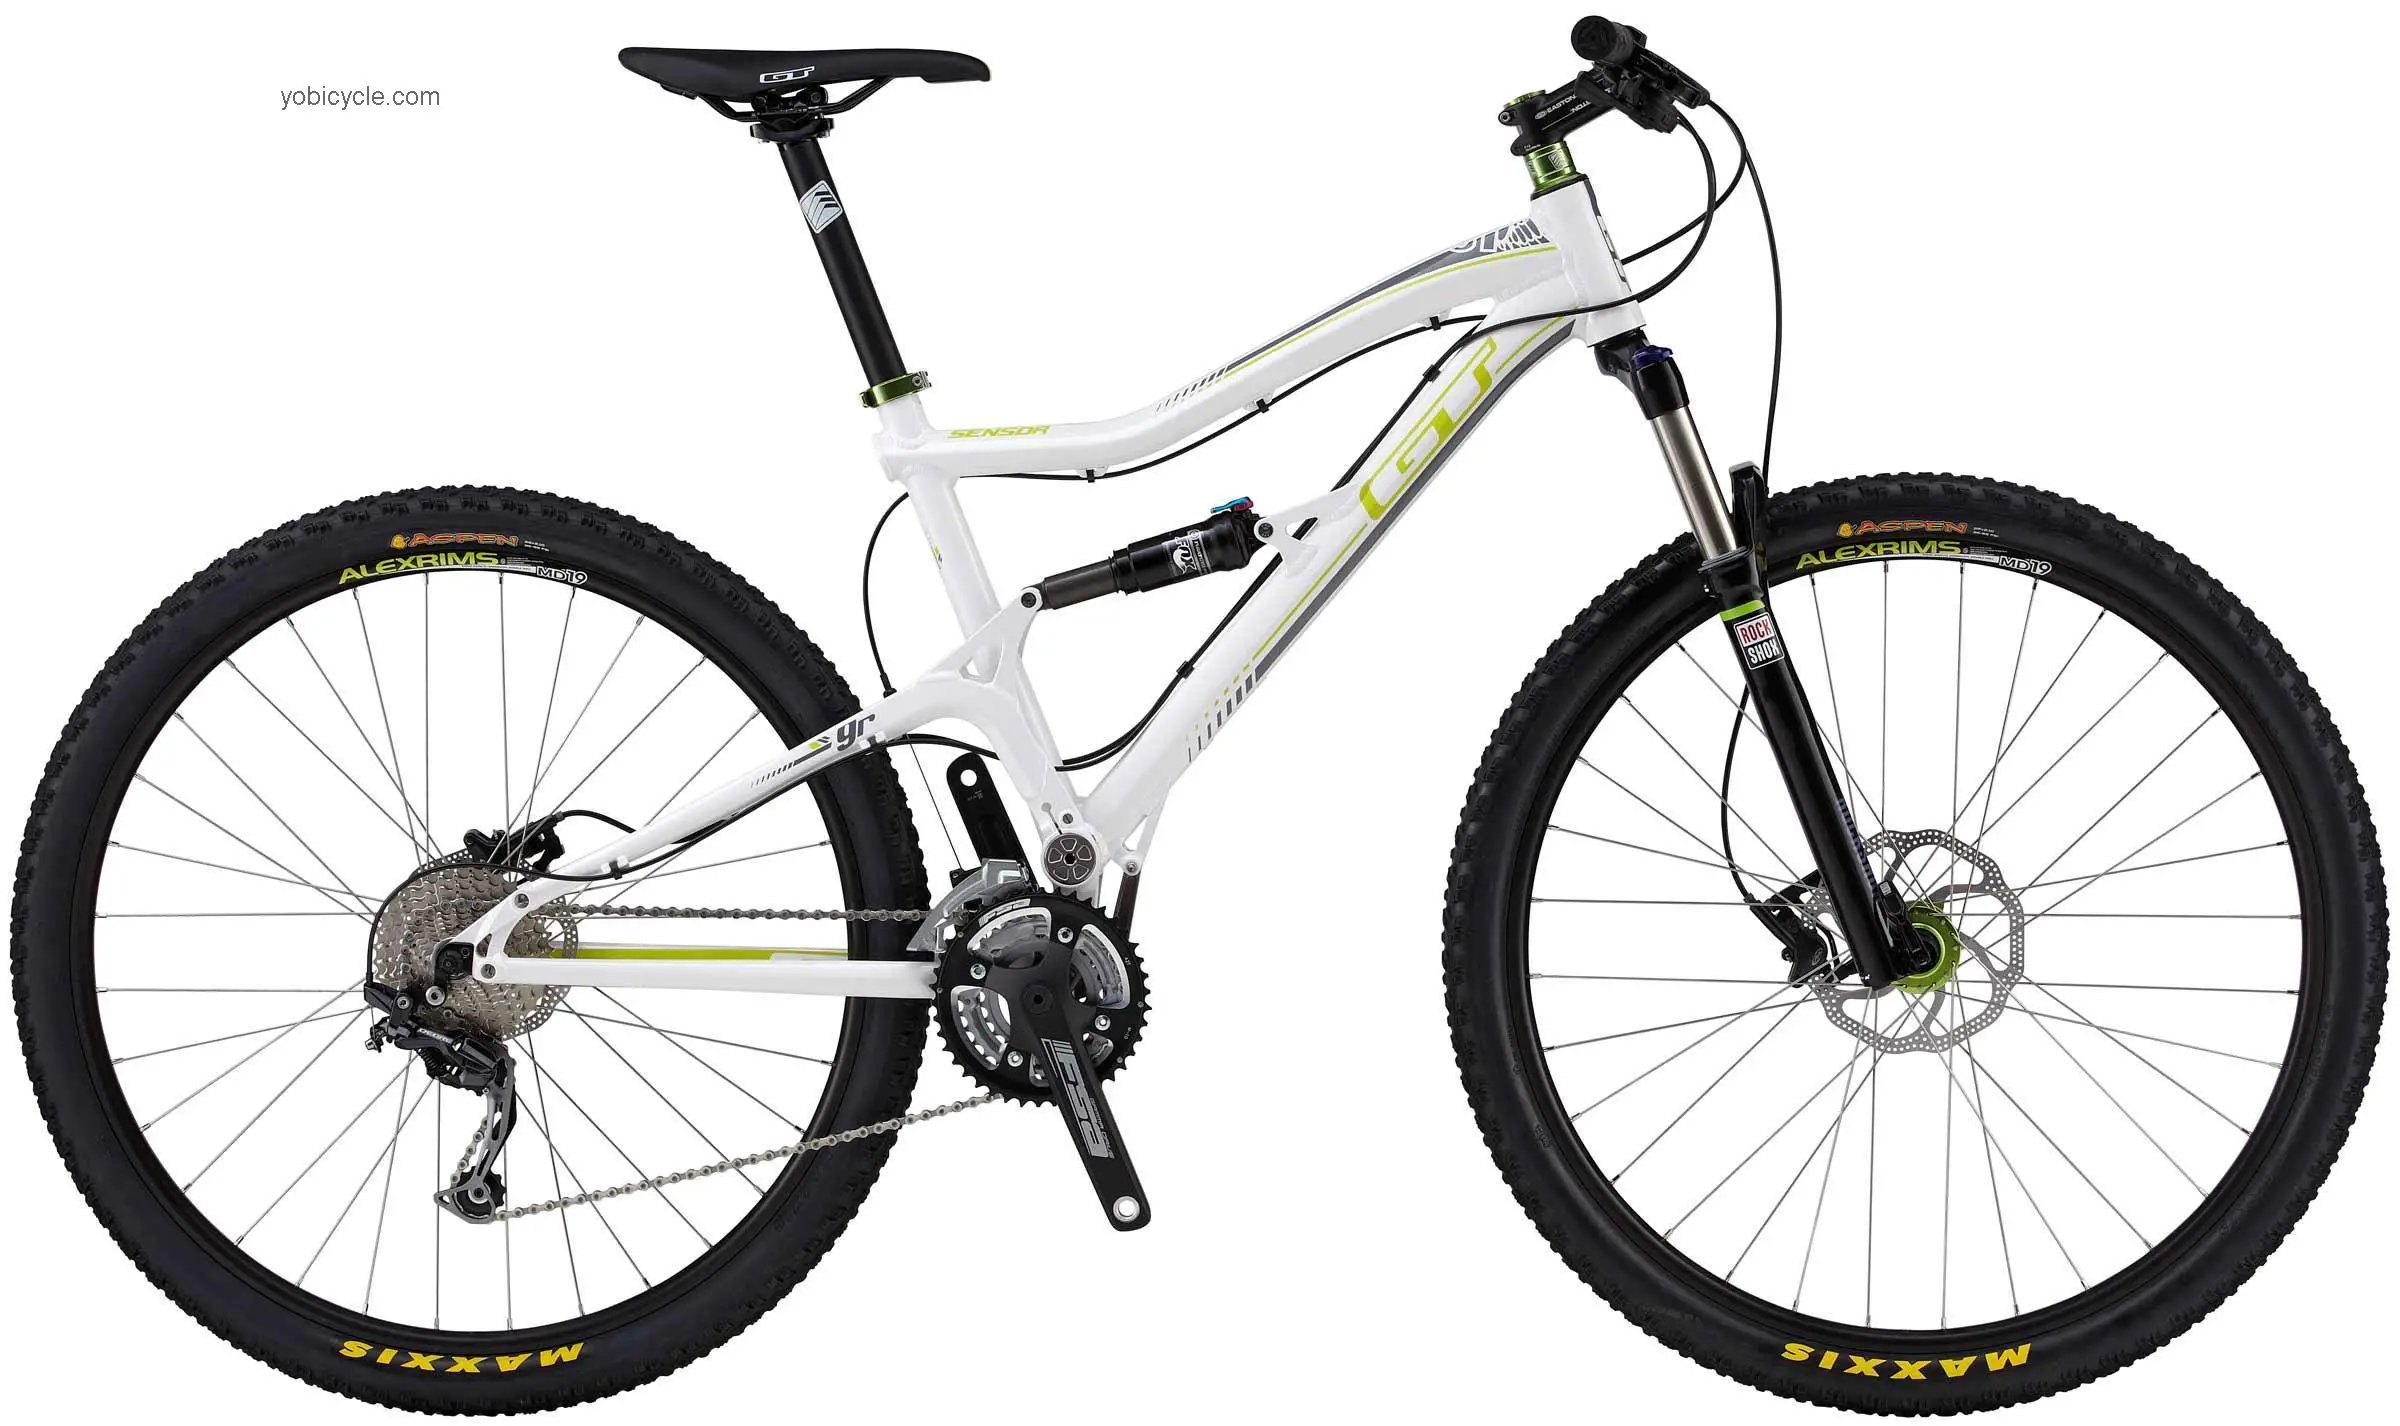 GT Bicycles Sensor 9R Elite 2013 comparison online with competitors